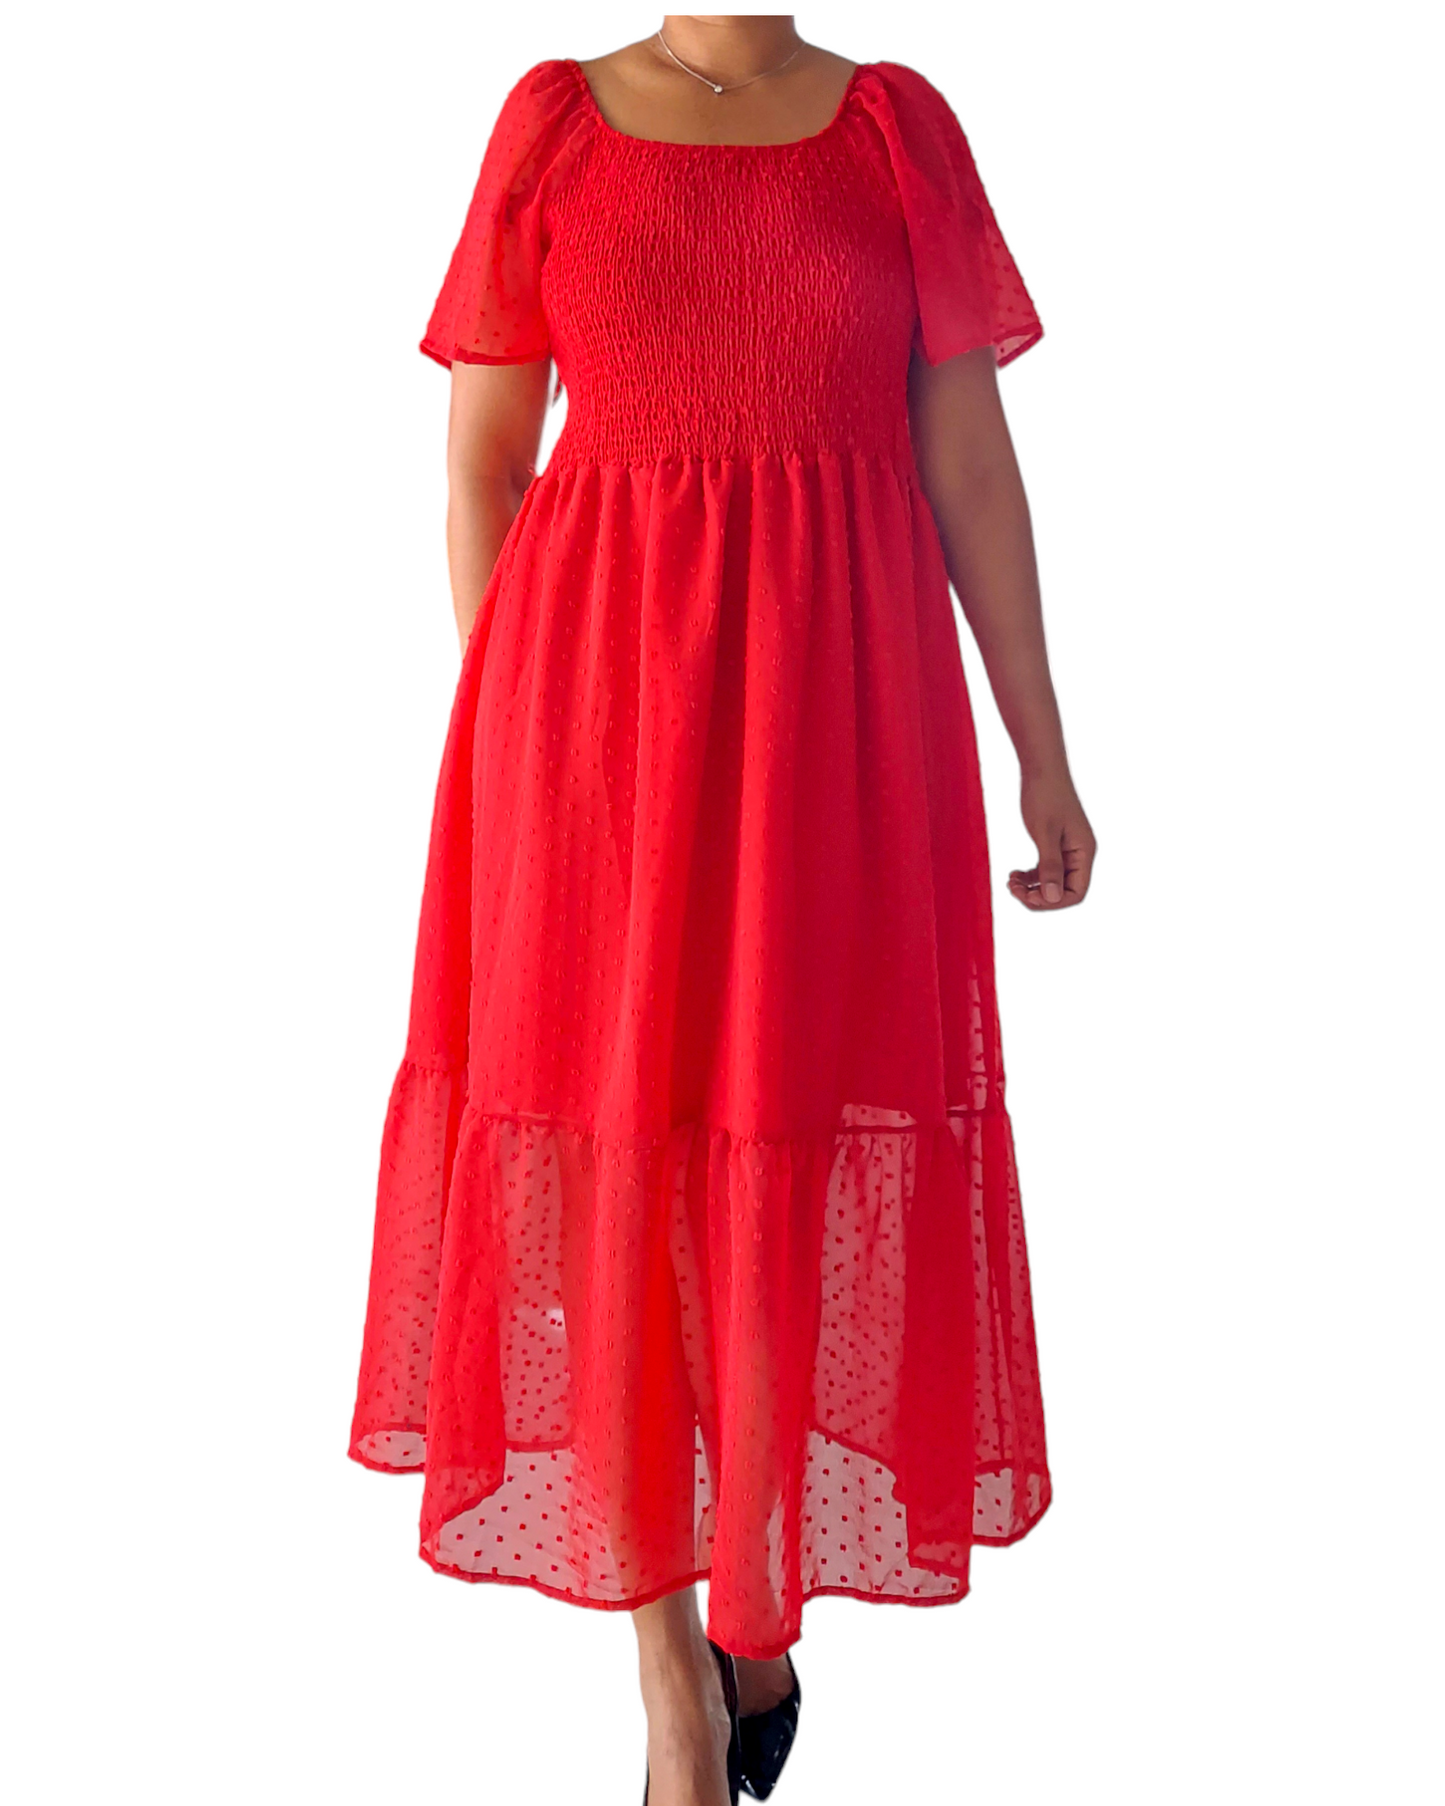 Women Tube Dress - 4123 Red